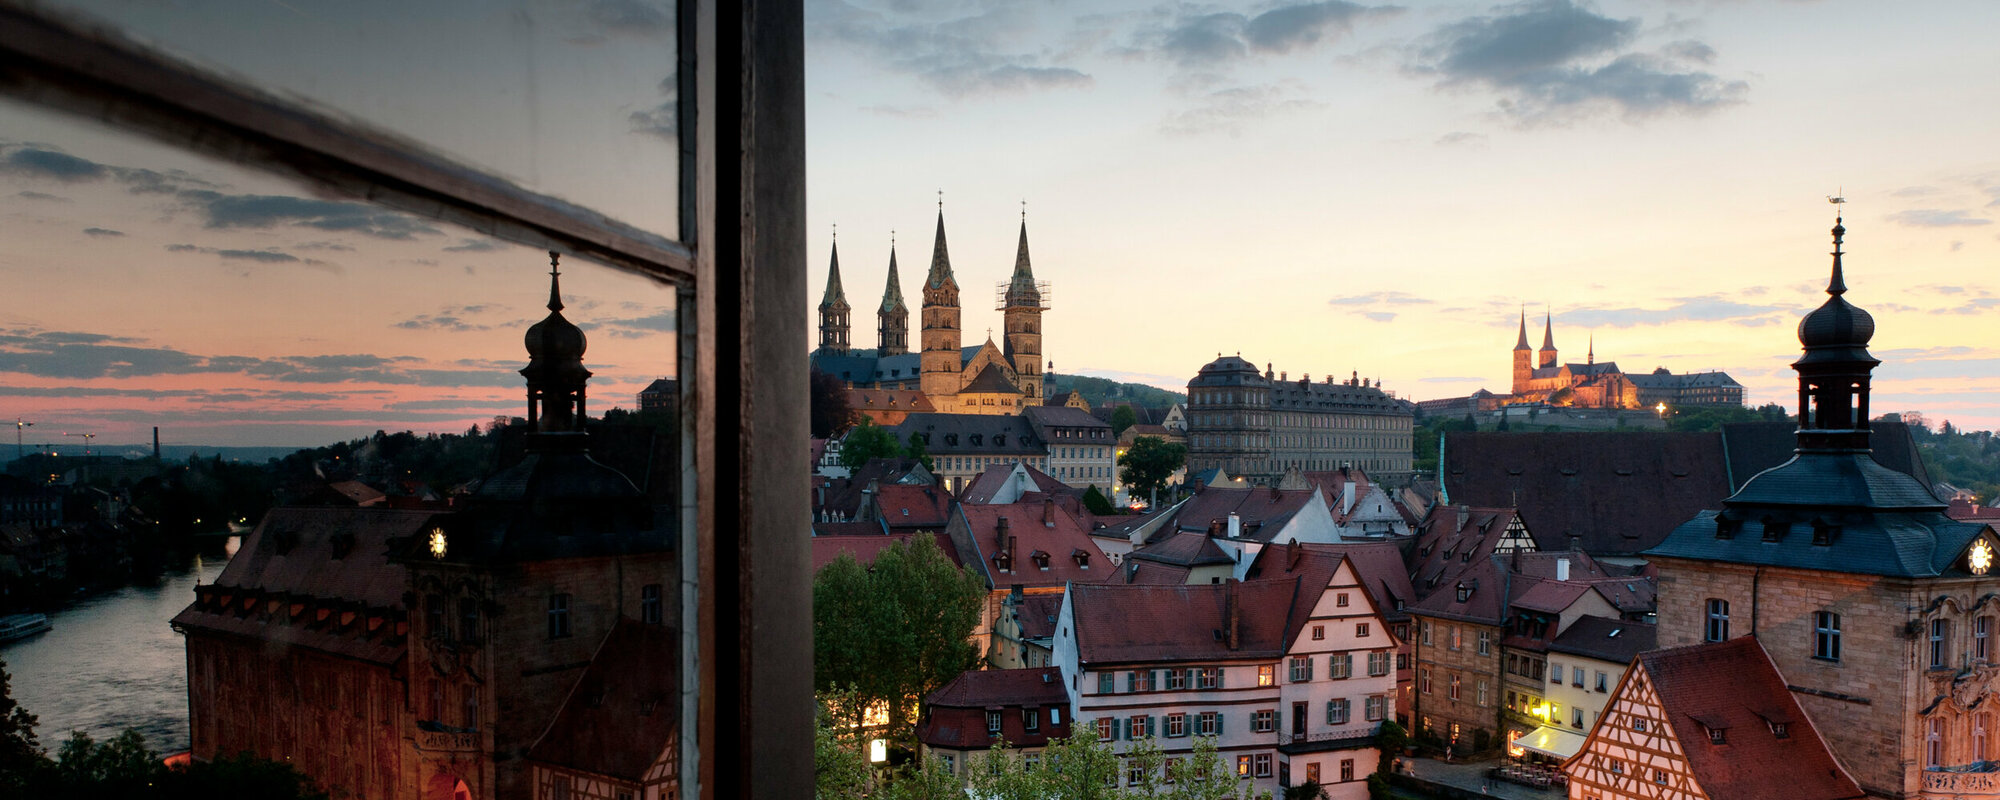 Blick durch ein offenes Fenster auf die Altstadt mit verwinkelten Gassen und dem Dom.